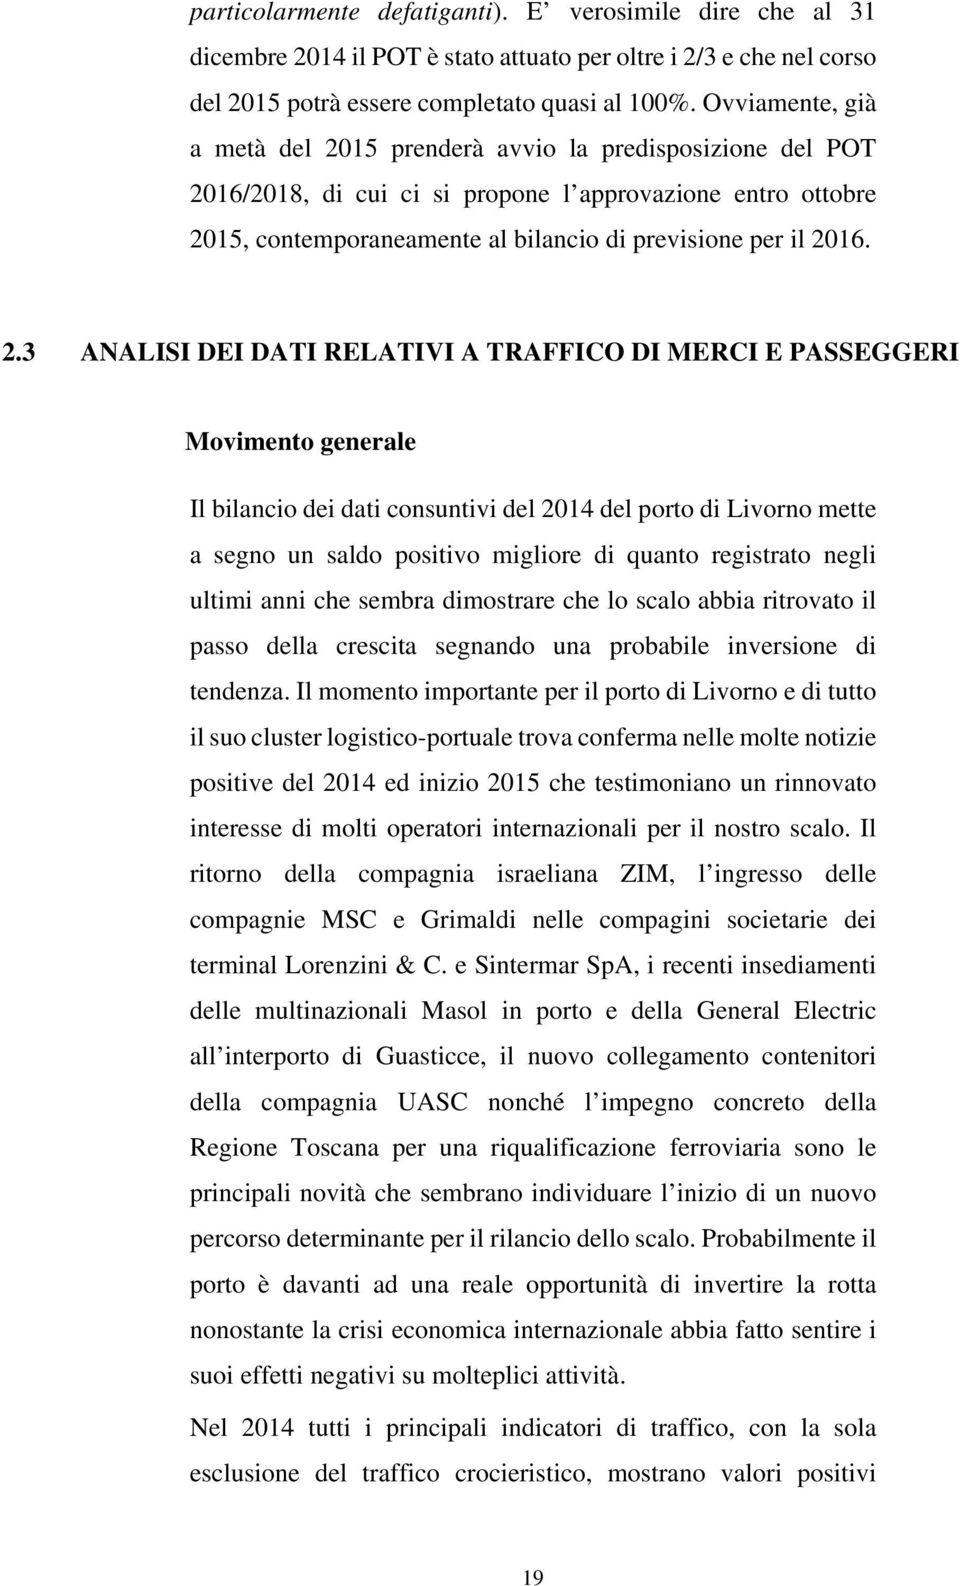 2.3 ANALISI DEI DATI RELATIVI A TRAFFICO DI MERCI E PASSEGGERI Movimento generale Il bilancio dei dati consuntivi del 2014 del porto di Livorno mette a segno un saldo positivo migliore di quanto